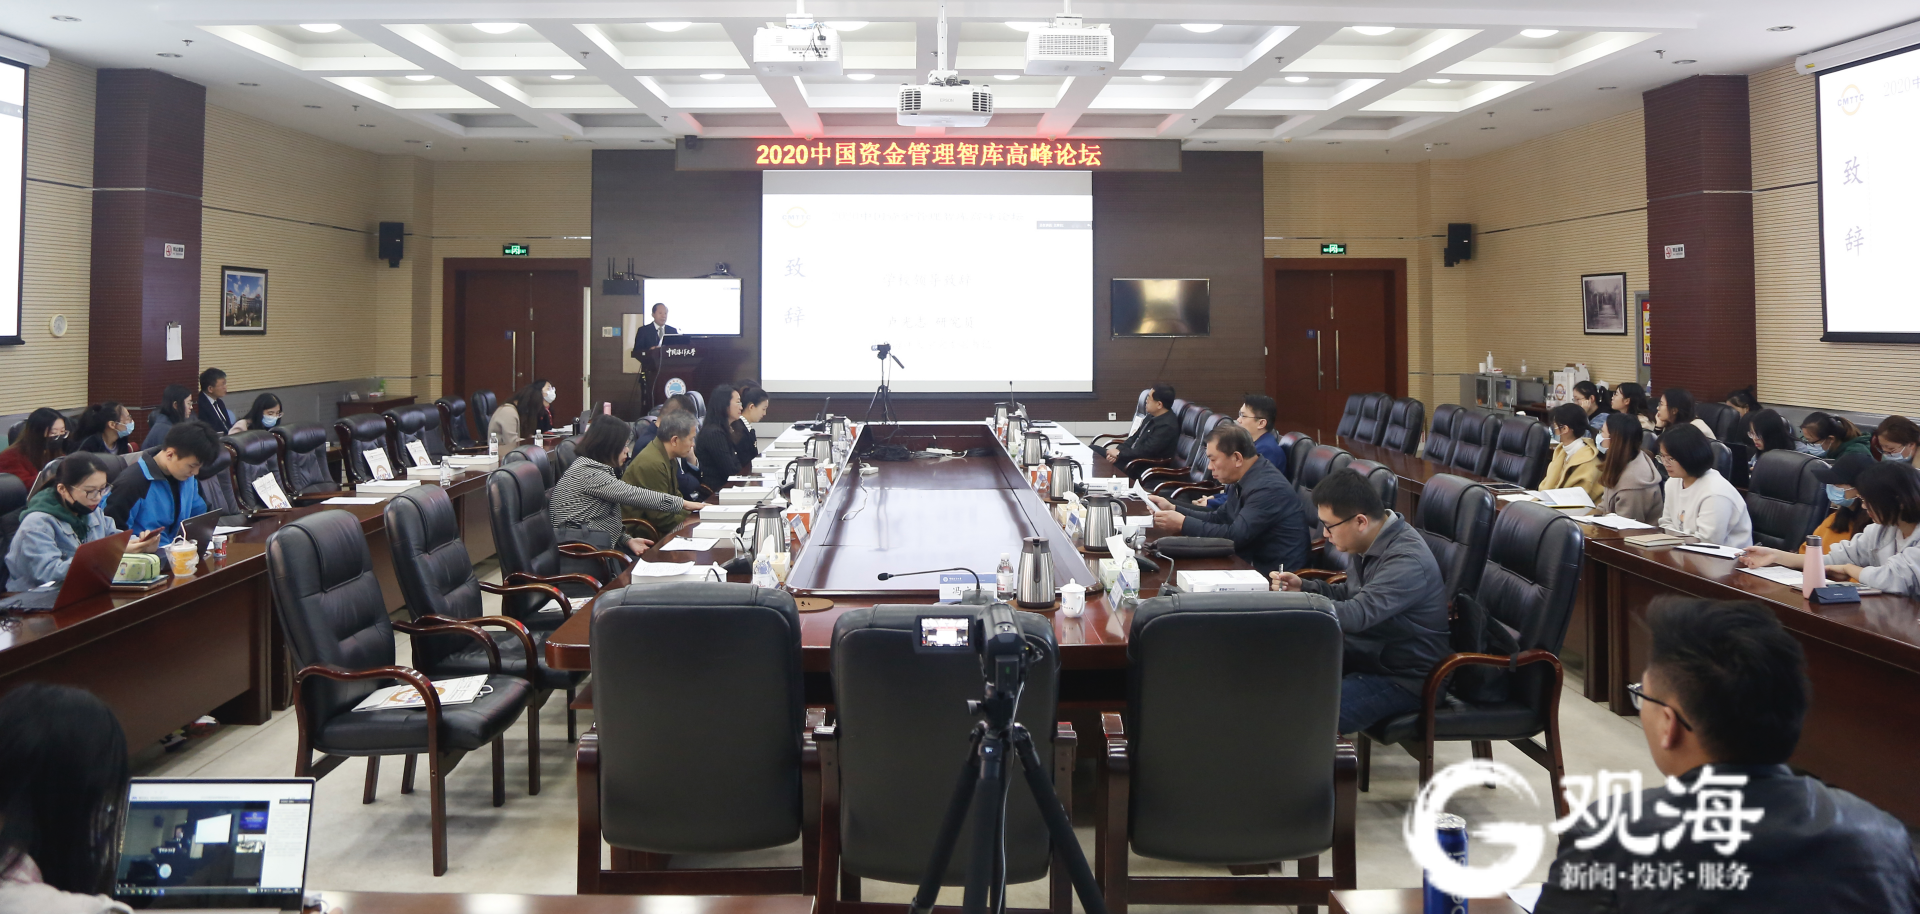 聚焦“营商环境与资本配置”，中国资金管理智库高峰论坛在青举行